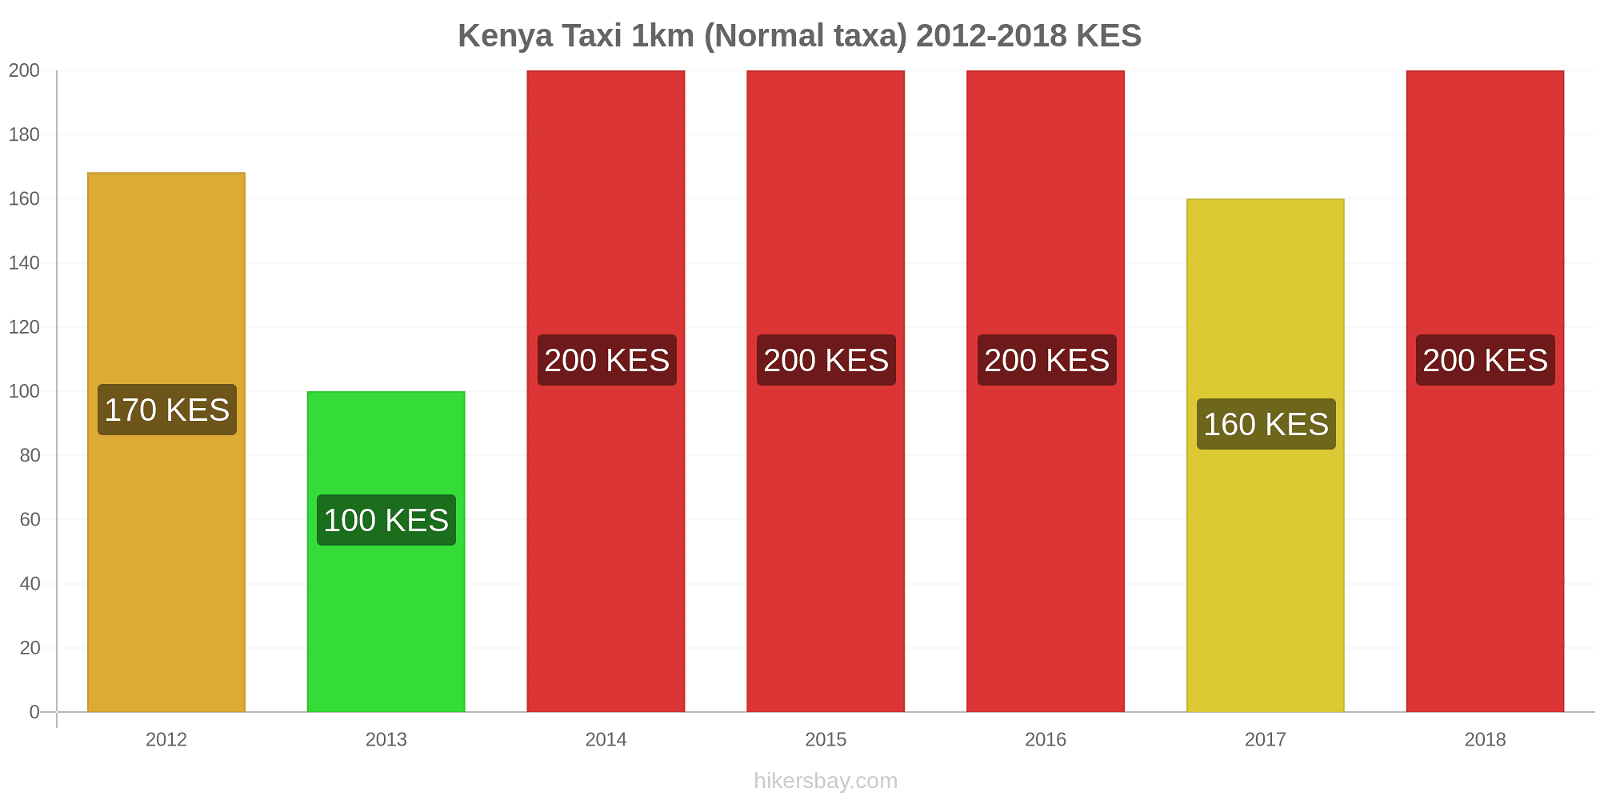 Kenya prisändringar Taxi 1km (Normal taxa) hikersbay.com